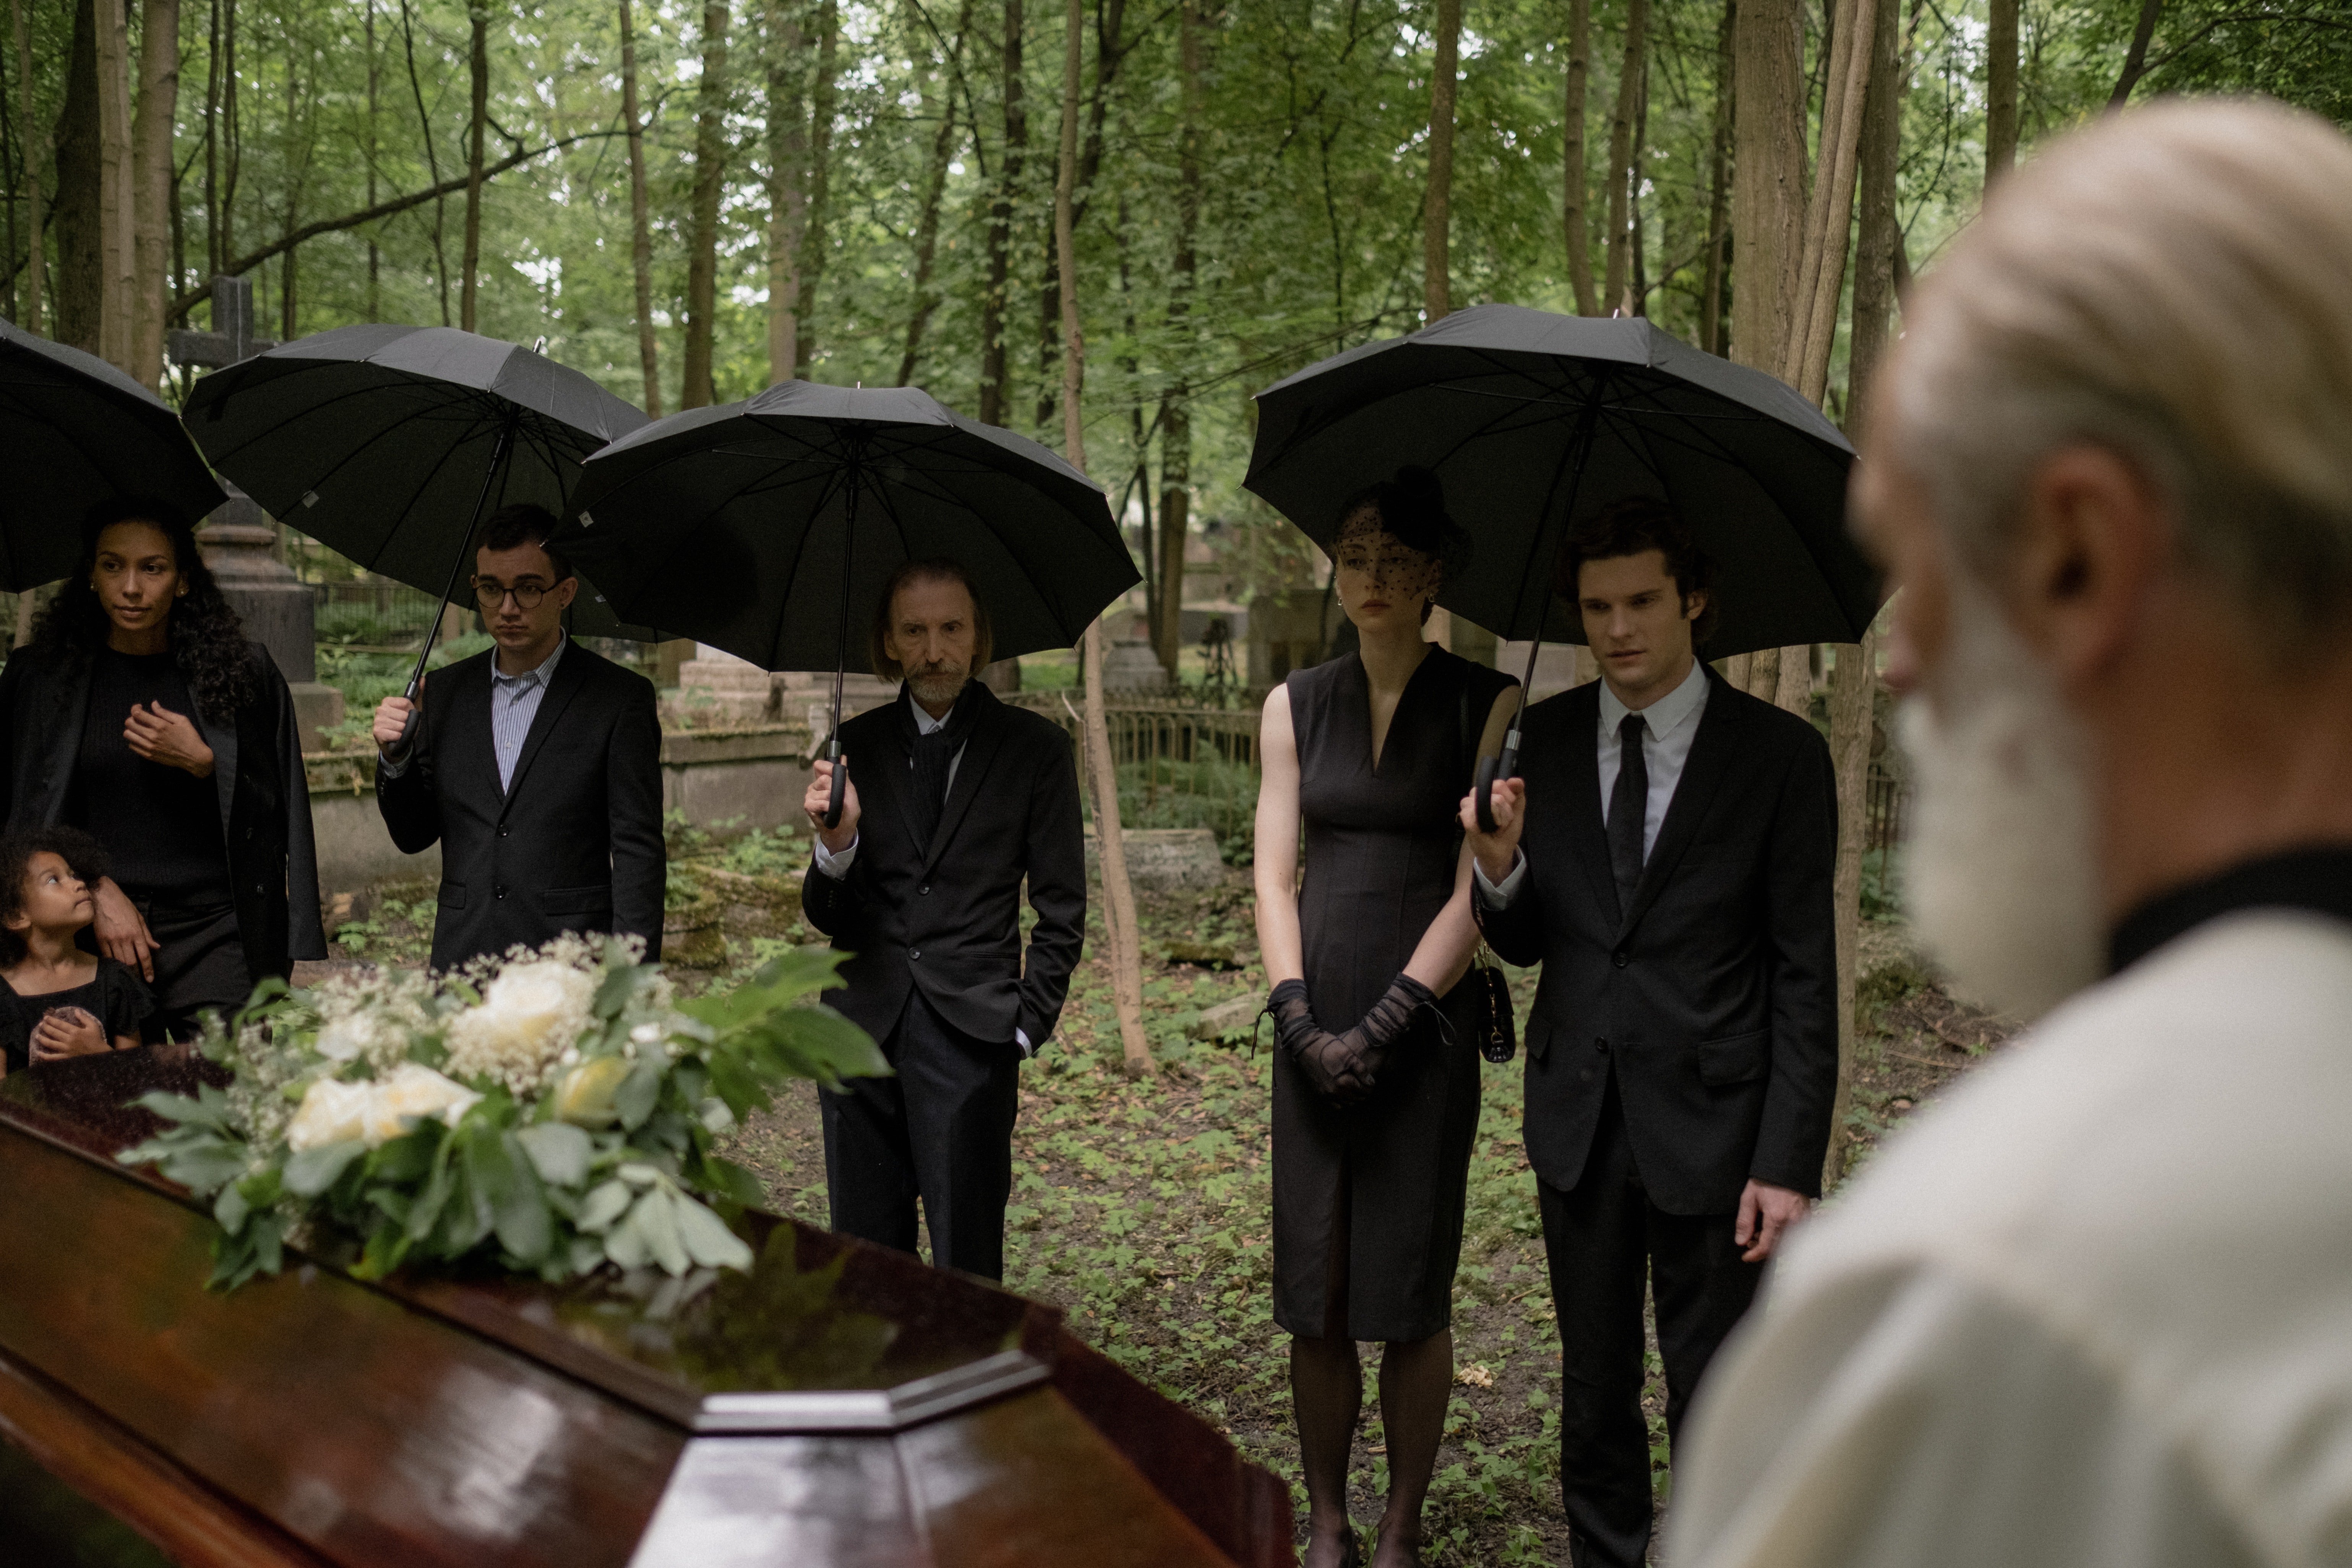 Mr. Olsen made arrangements for Elizabeth's funeral. | Source: Pexels